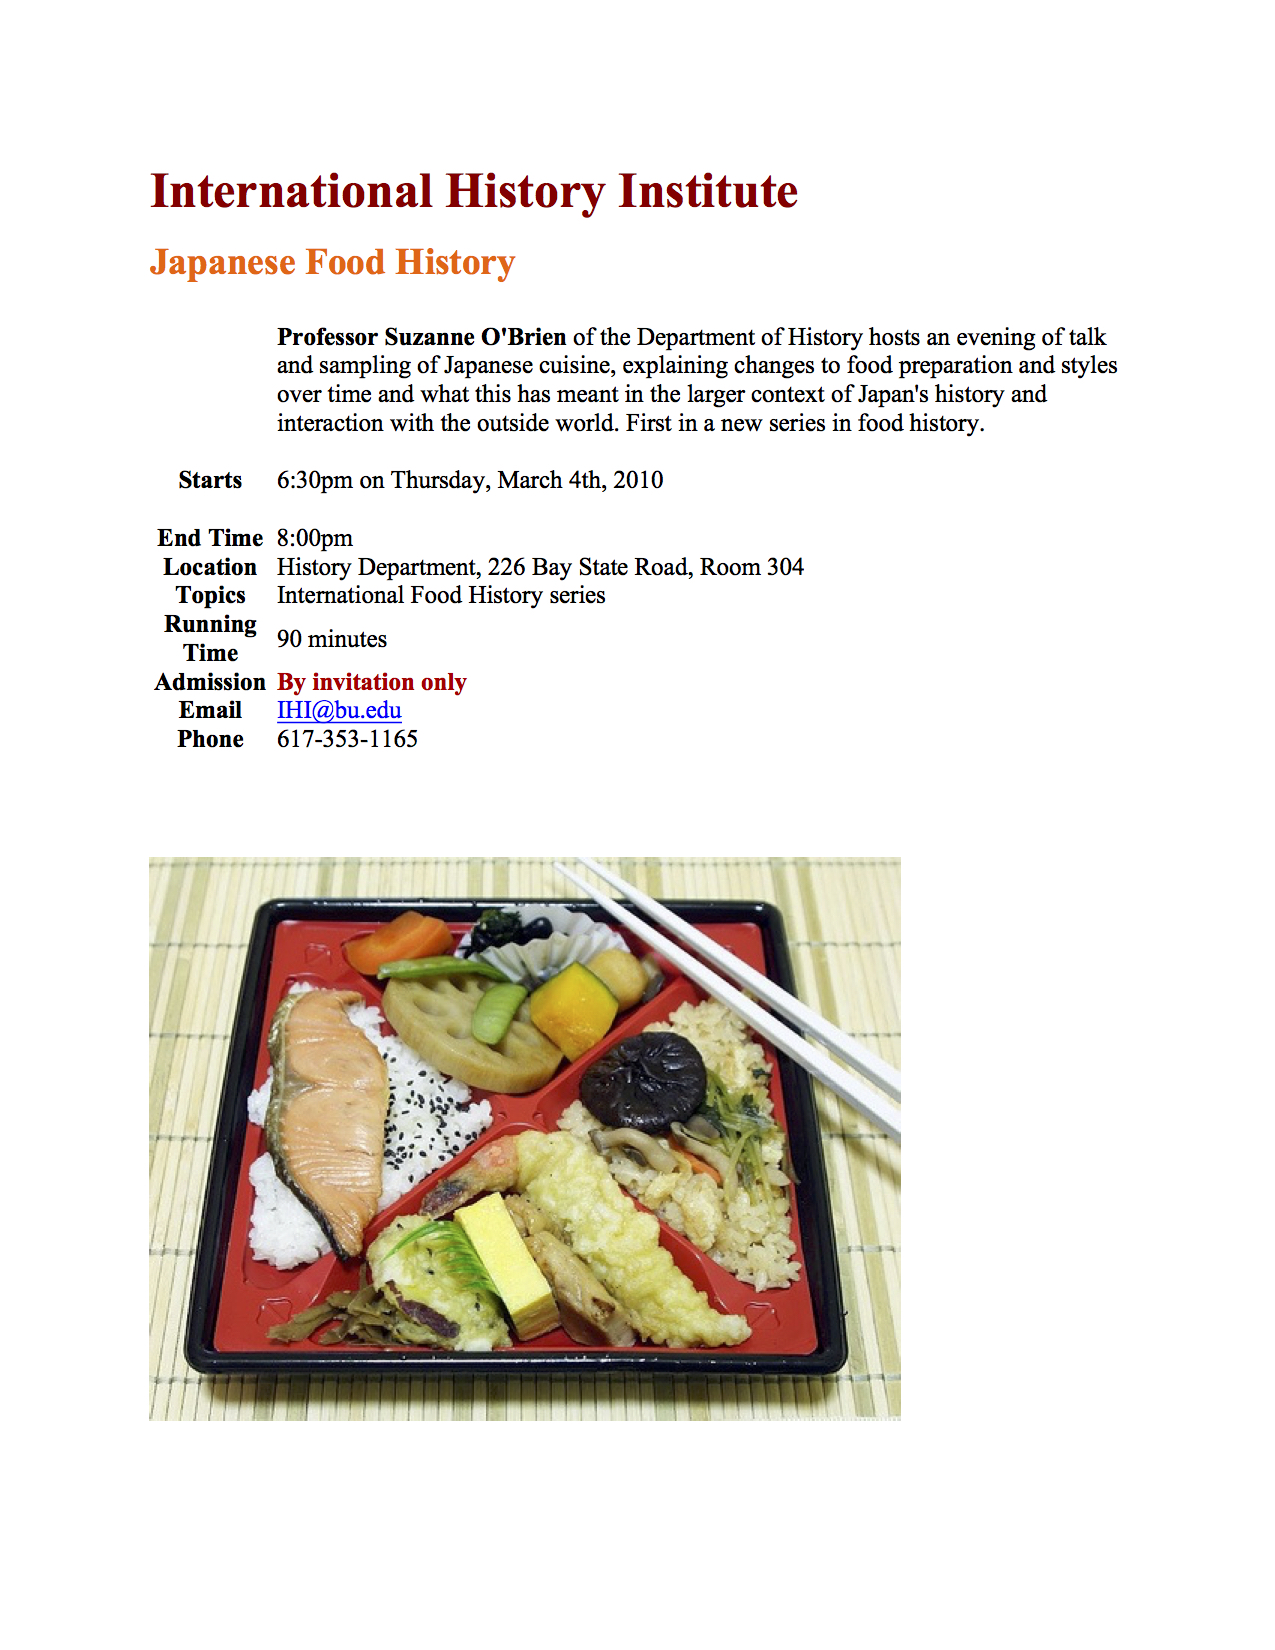 https://www.bu.edu/ihi/files/2016/02/2010-Food-History-of-Japan-OBrien.jpg